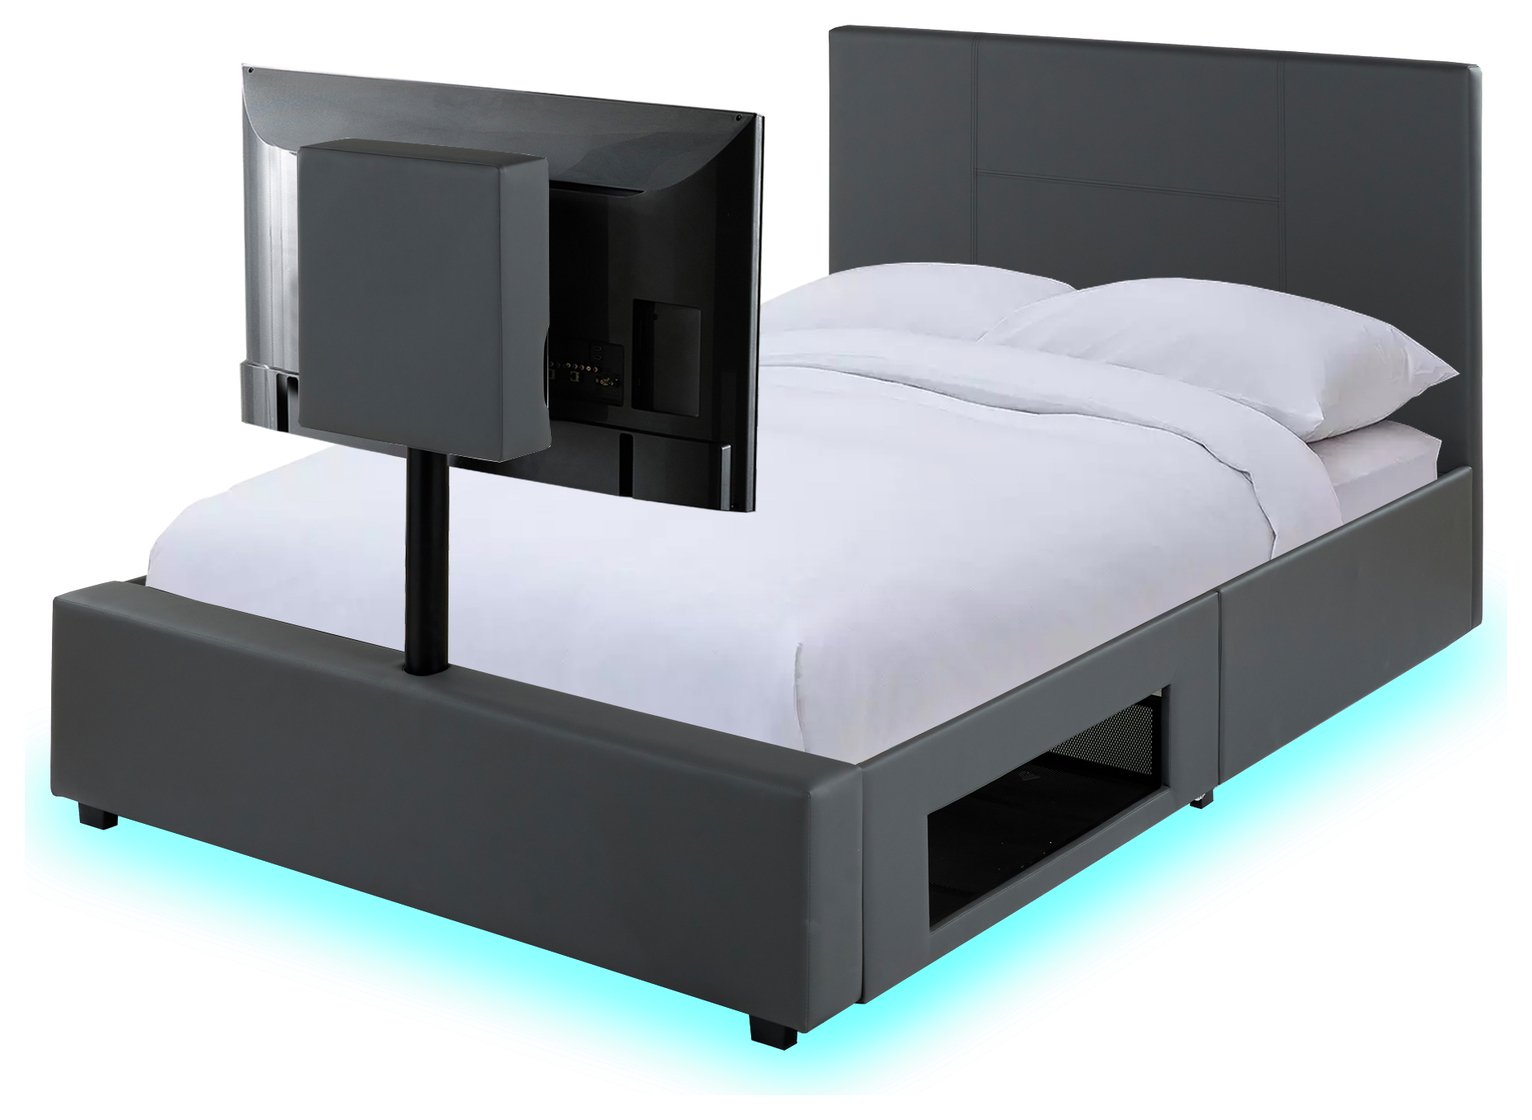 XR Living Ava Kingsize TV Bed Frame - Grey